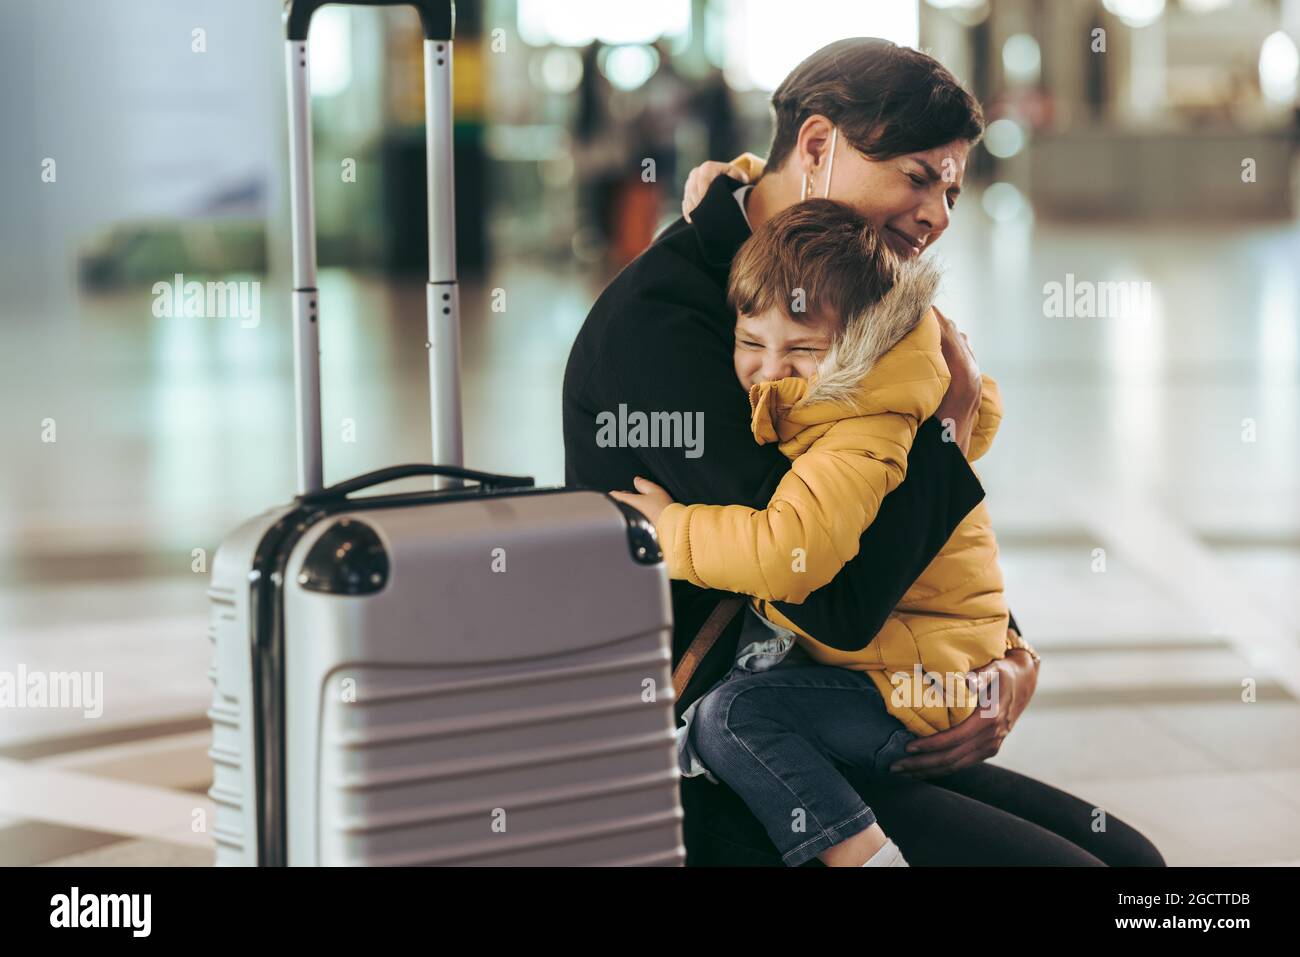 Mutter mit ihrem Kind am Flughafen in einer Pandemie am Flughafen. Frau fühlt sich emotional, als sie ihren Sohn während des Covid-19-Ausbruchs am Flughafen trifft. Stockfoto